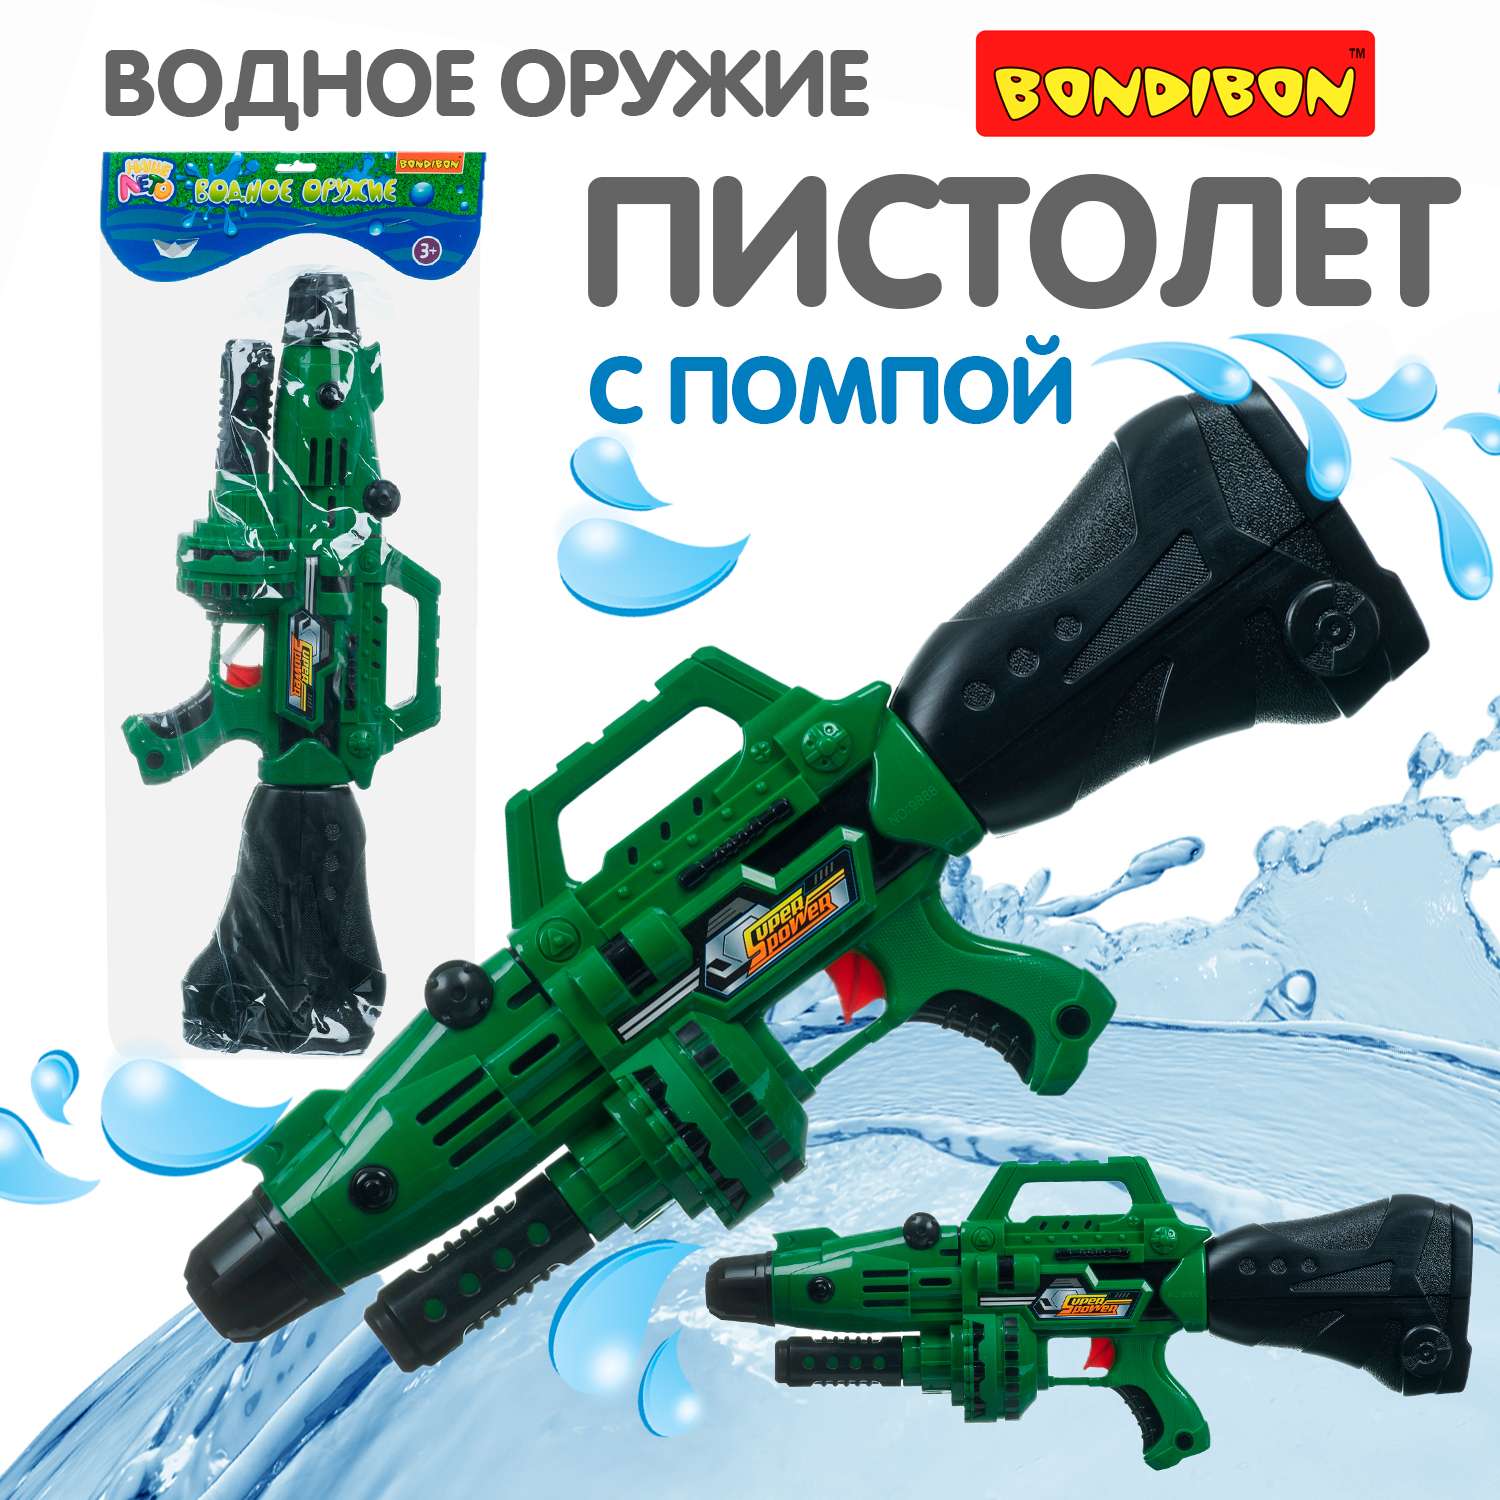 Водный пистолет с помпой BONDIBON серия Наше Лето милитари-зелёного цвета - фото 1